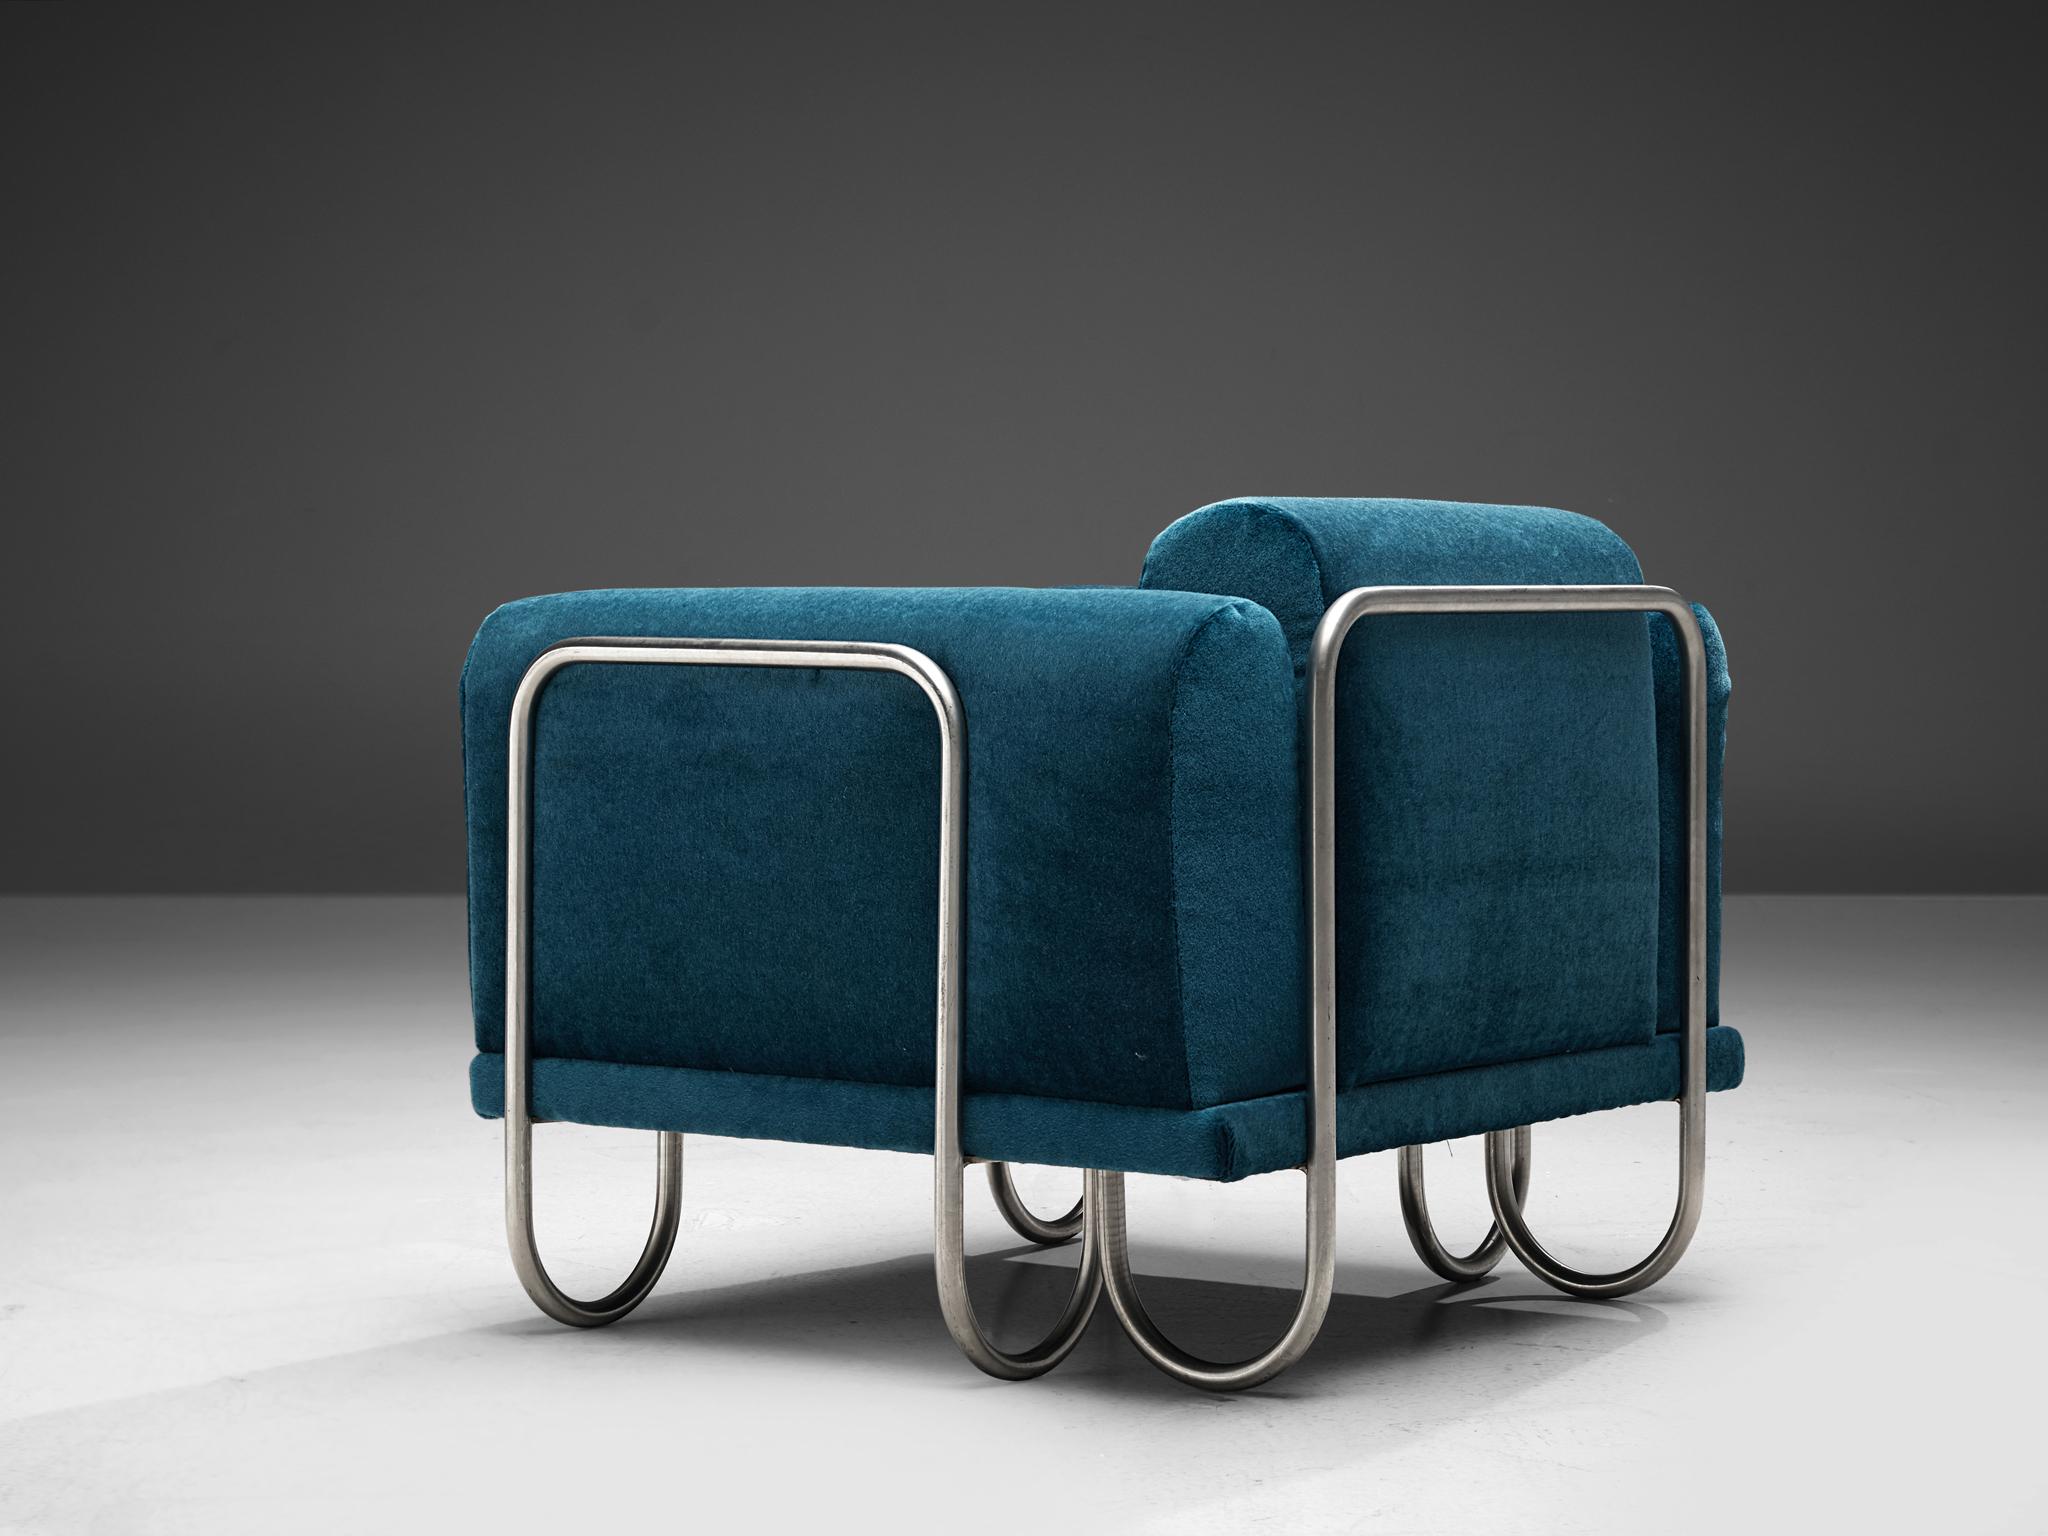 Grand ensemble de fauteuils club, tissu et métal, France, années 1970

Un fauteuil confortable doté d'une structure tubulaire chromée incurvée. Le cadre semble être une ligne courbe continue, se déplaçant vers le haut pour soutenir les coussins et